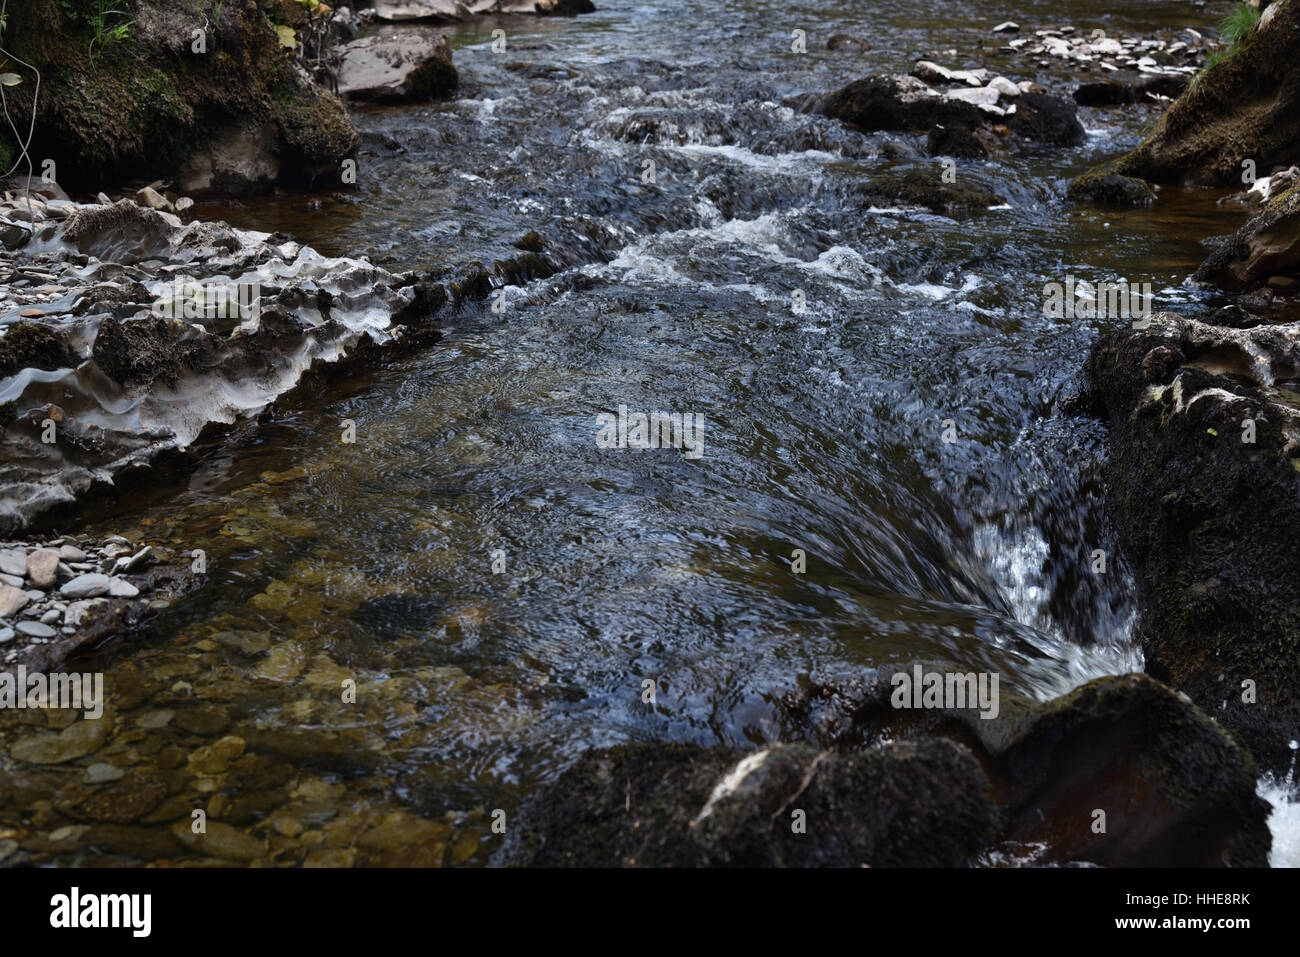 Cascades de la rivière Irfon, Abergwesyn, près de Llanwrtyd Wells, Powys, Wales, UK. Banque D'Images